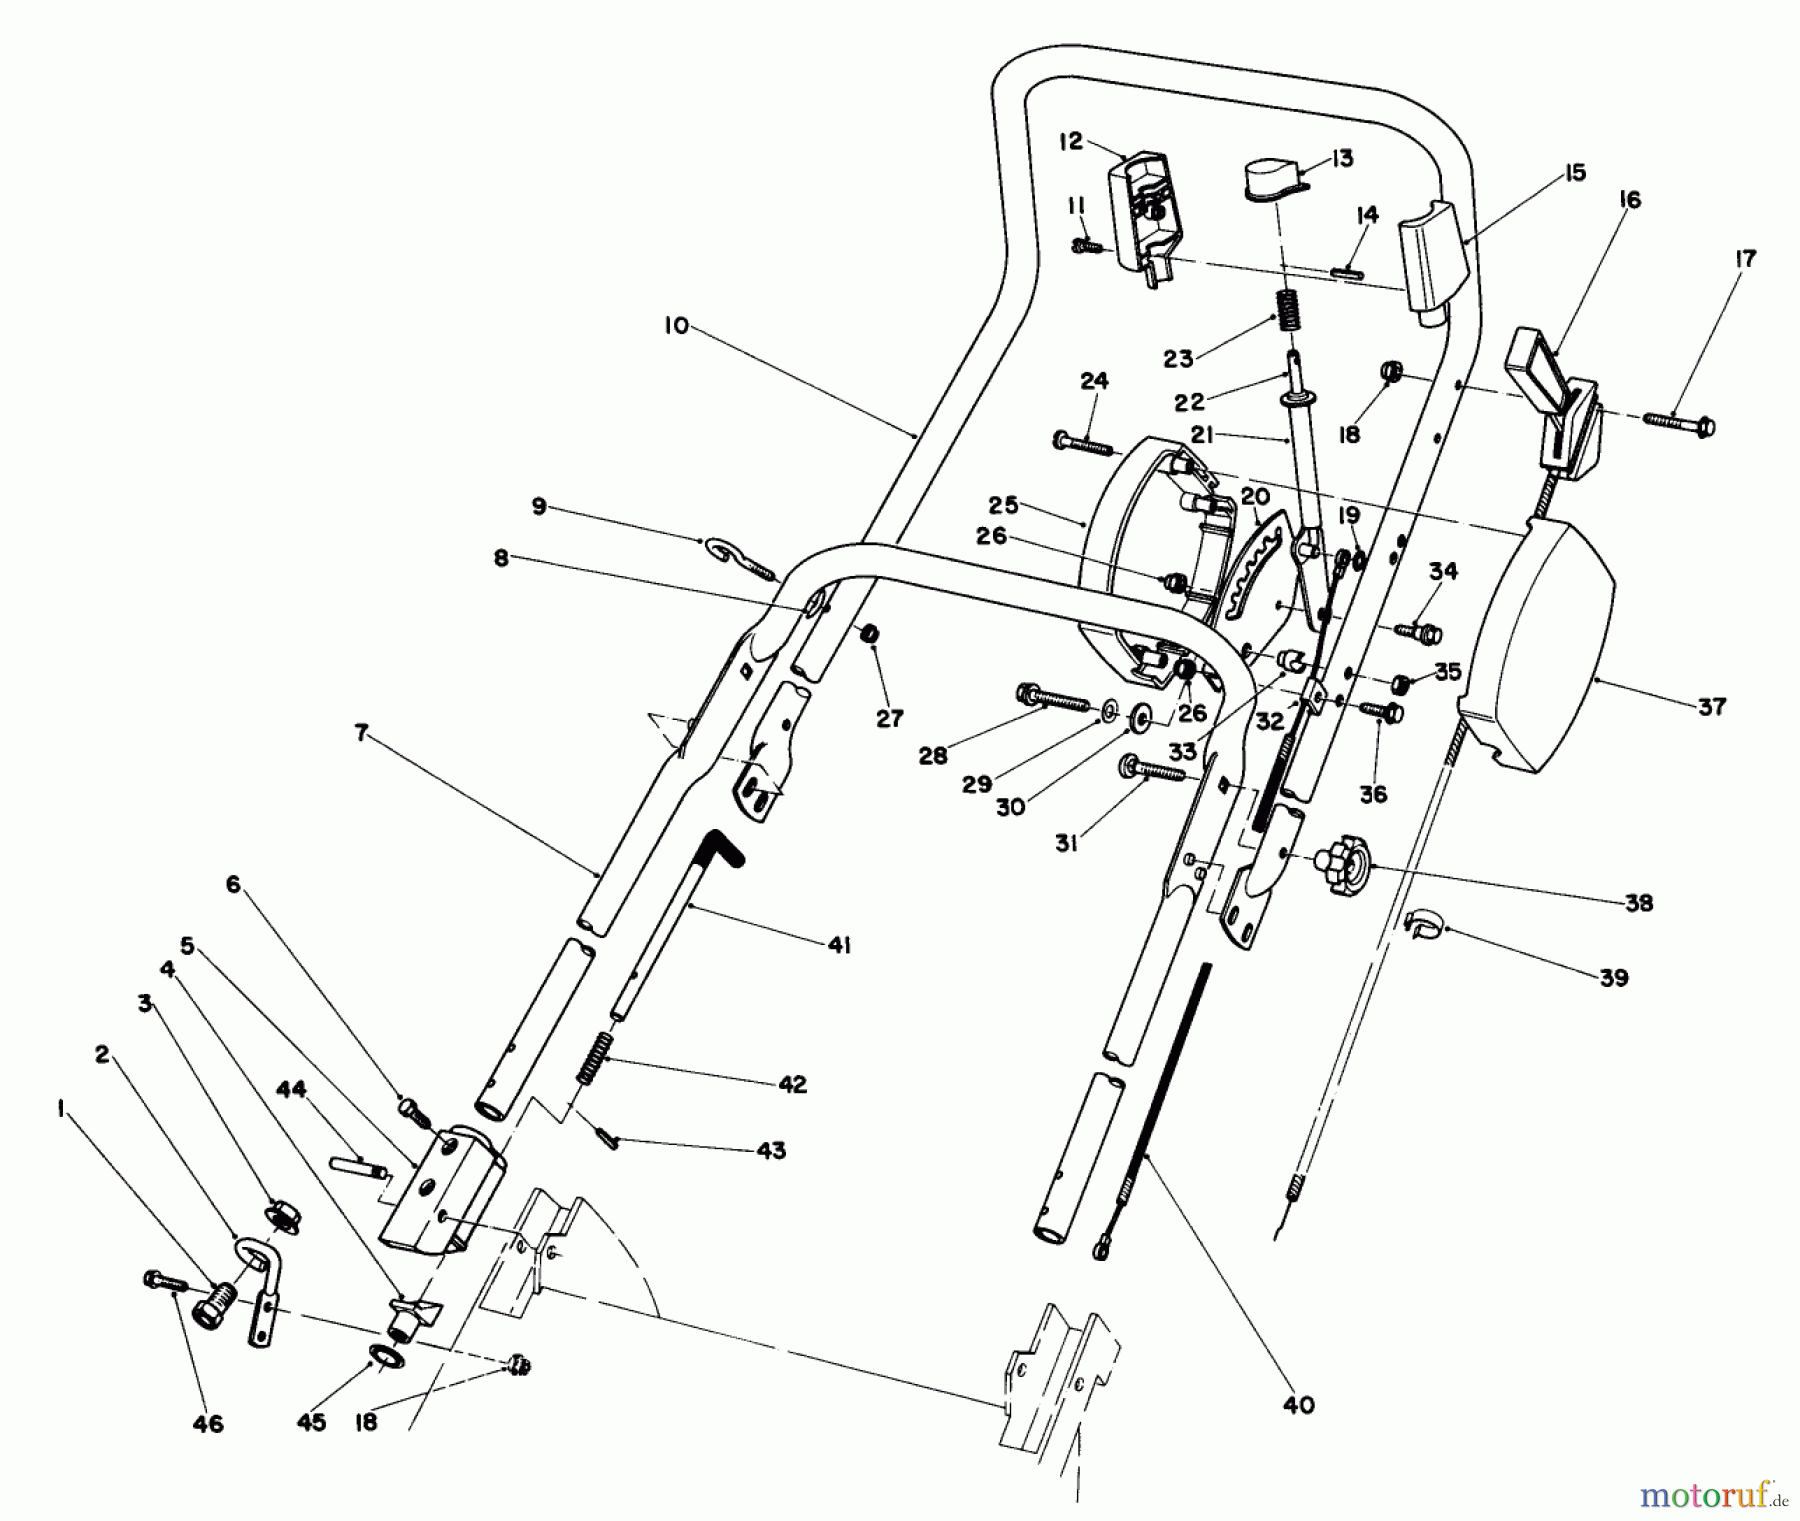  Toro Neu Mowers, Walk-Behind Seite 2 20830 - Toro Lawnmower, 1981 (1000001-1999999) HANDLE ASSEMBLY